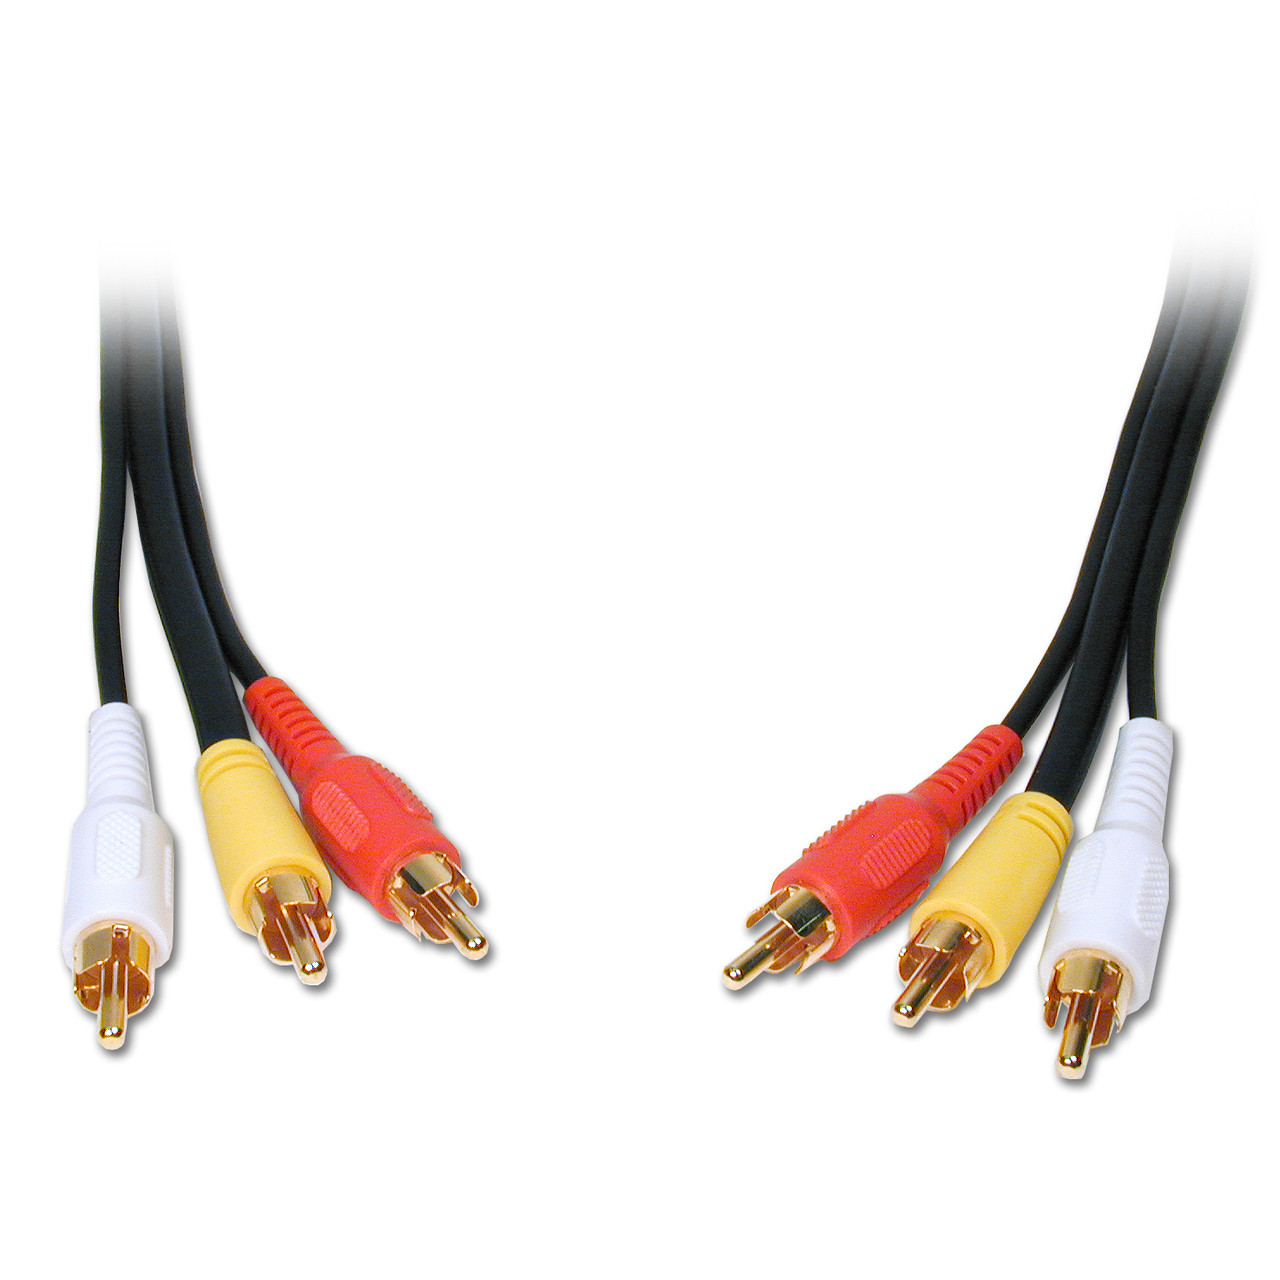 Cable 3 RCA a 3 RCA 1,5mts (0033) – Esselec